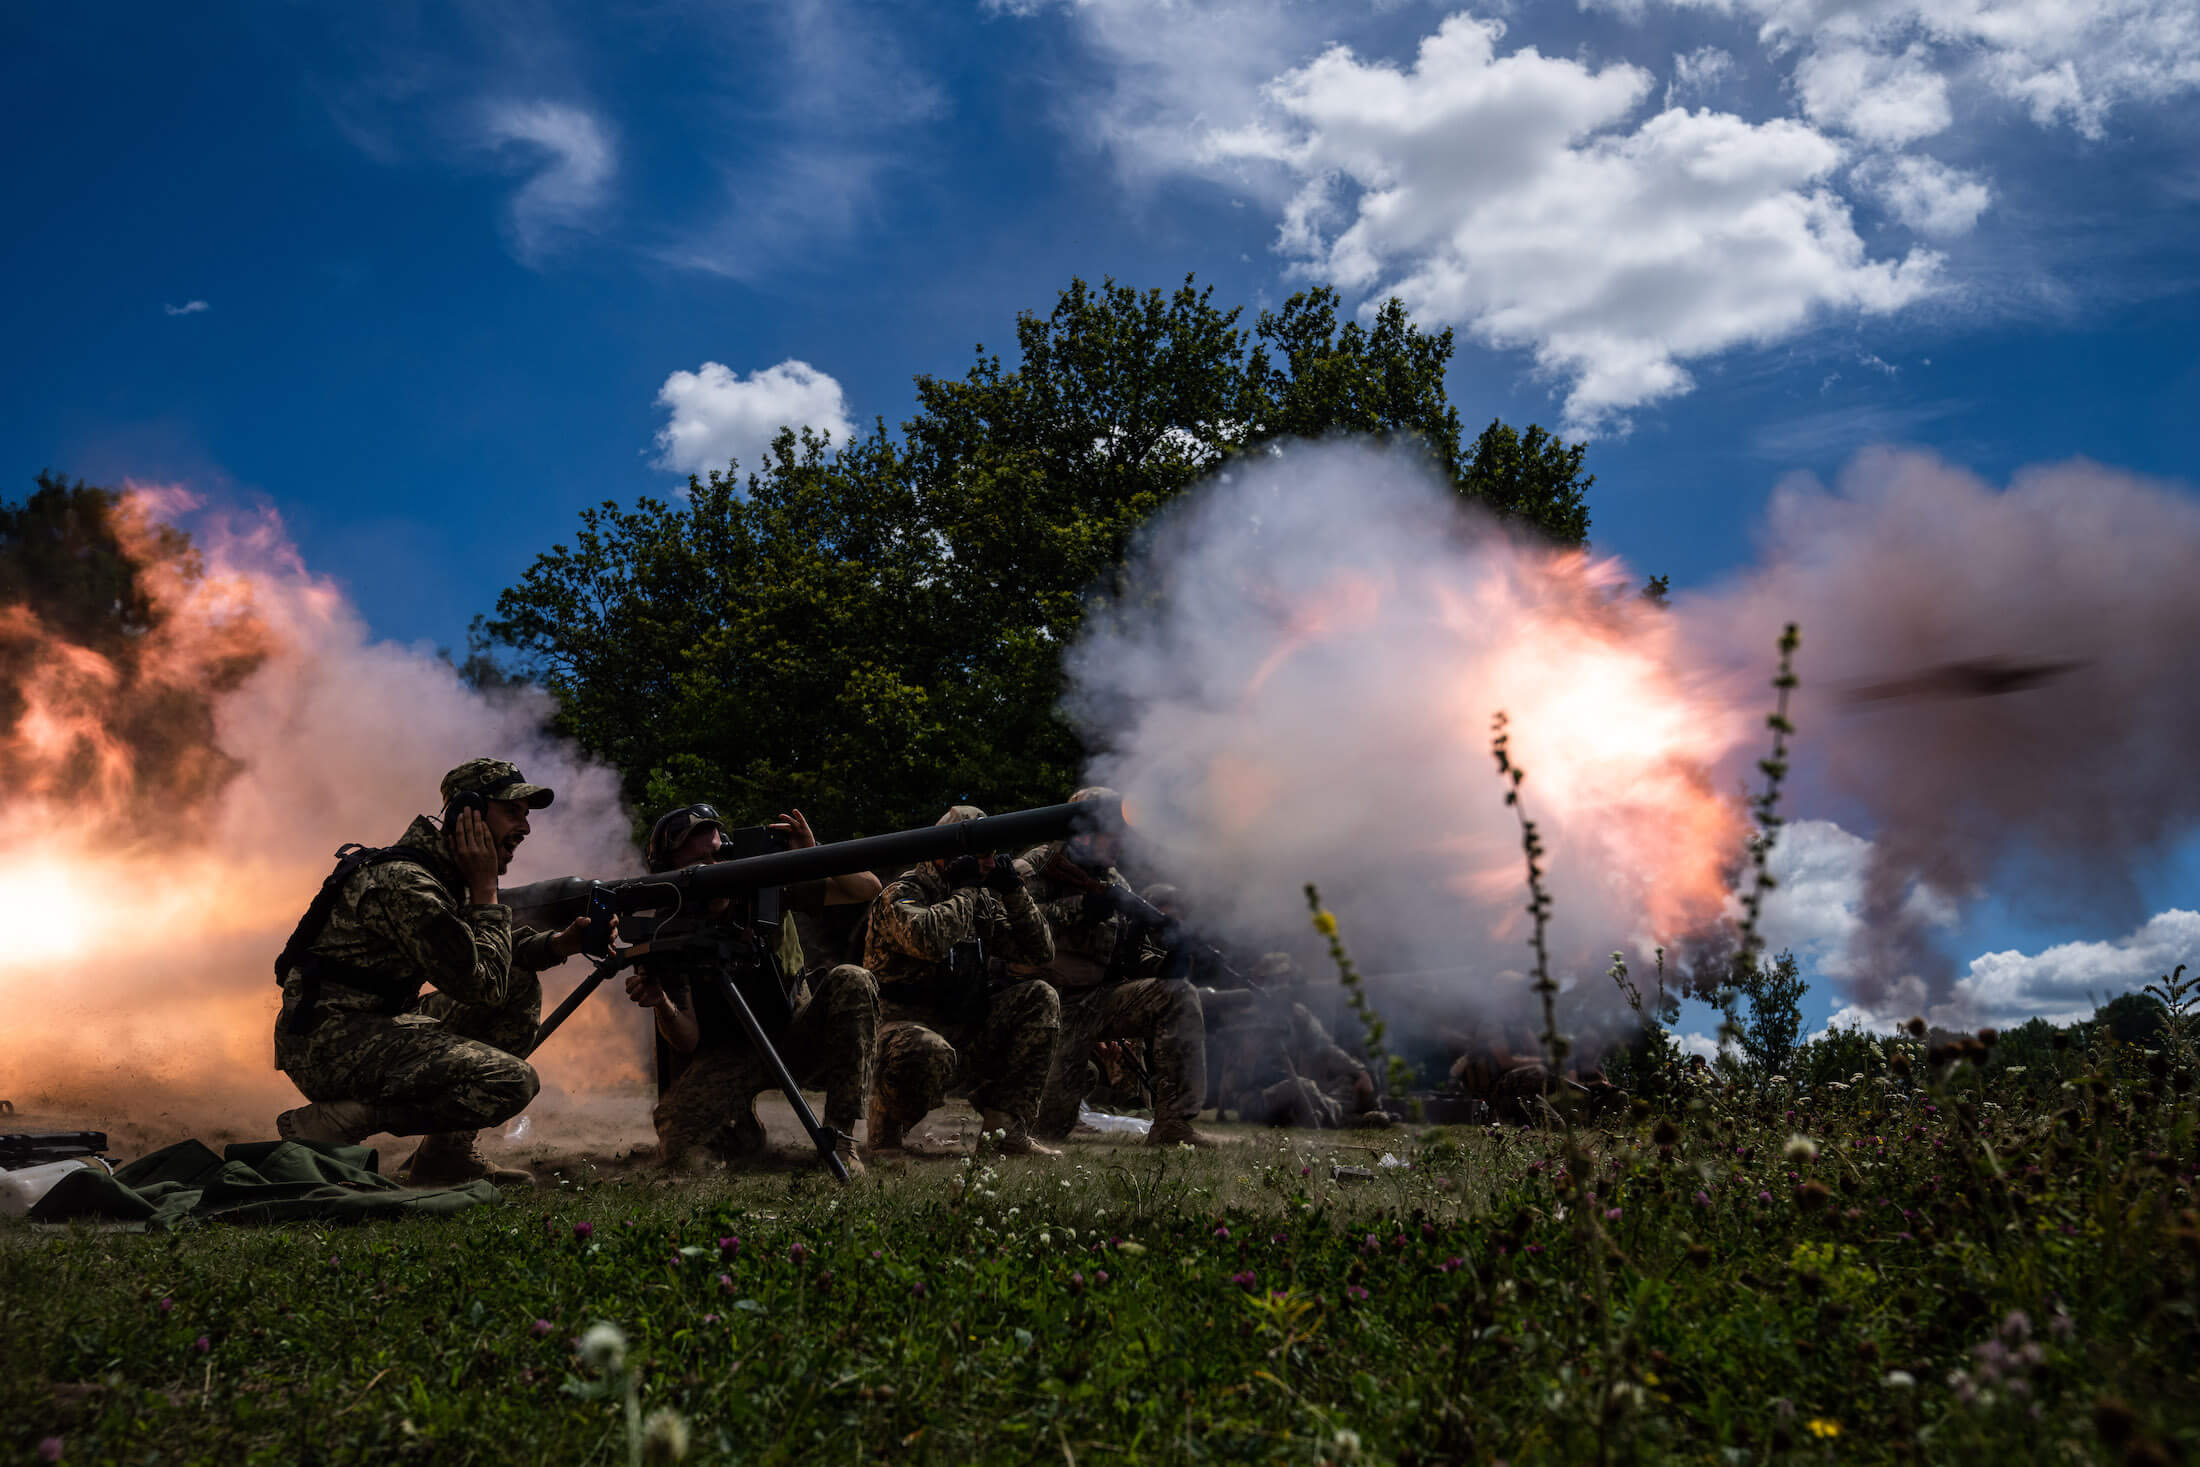 Українські військовослужбовці стріляють з болгарської СПГ-9 під час навчань на полігоні. Харківська область, 19 липня 2022 року.